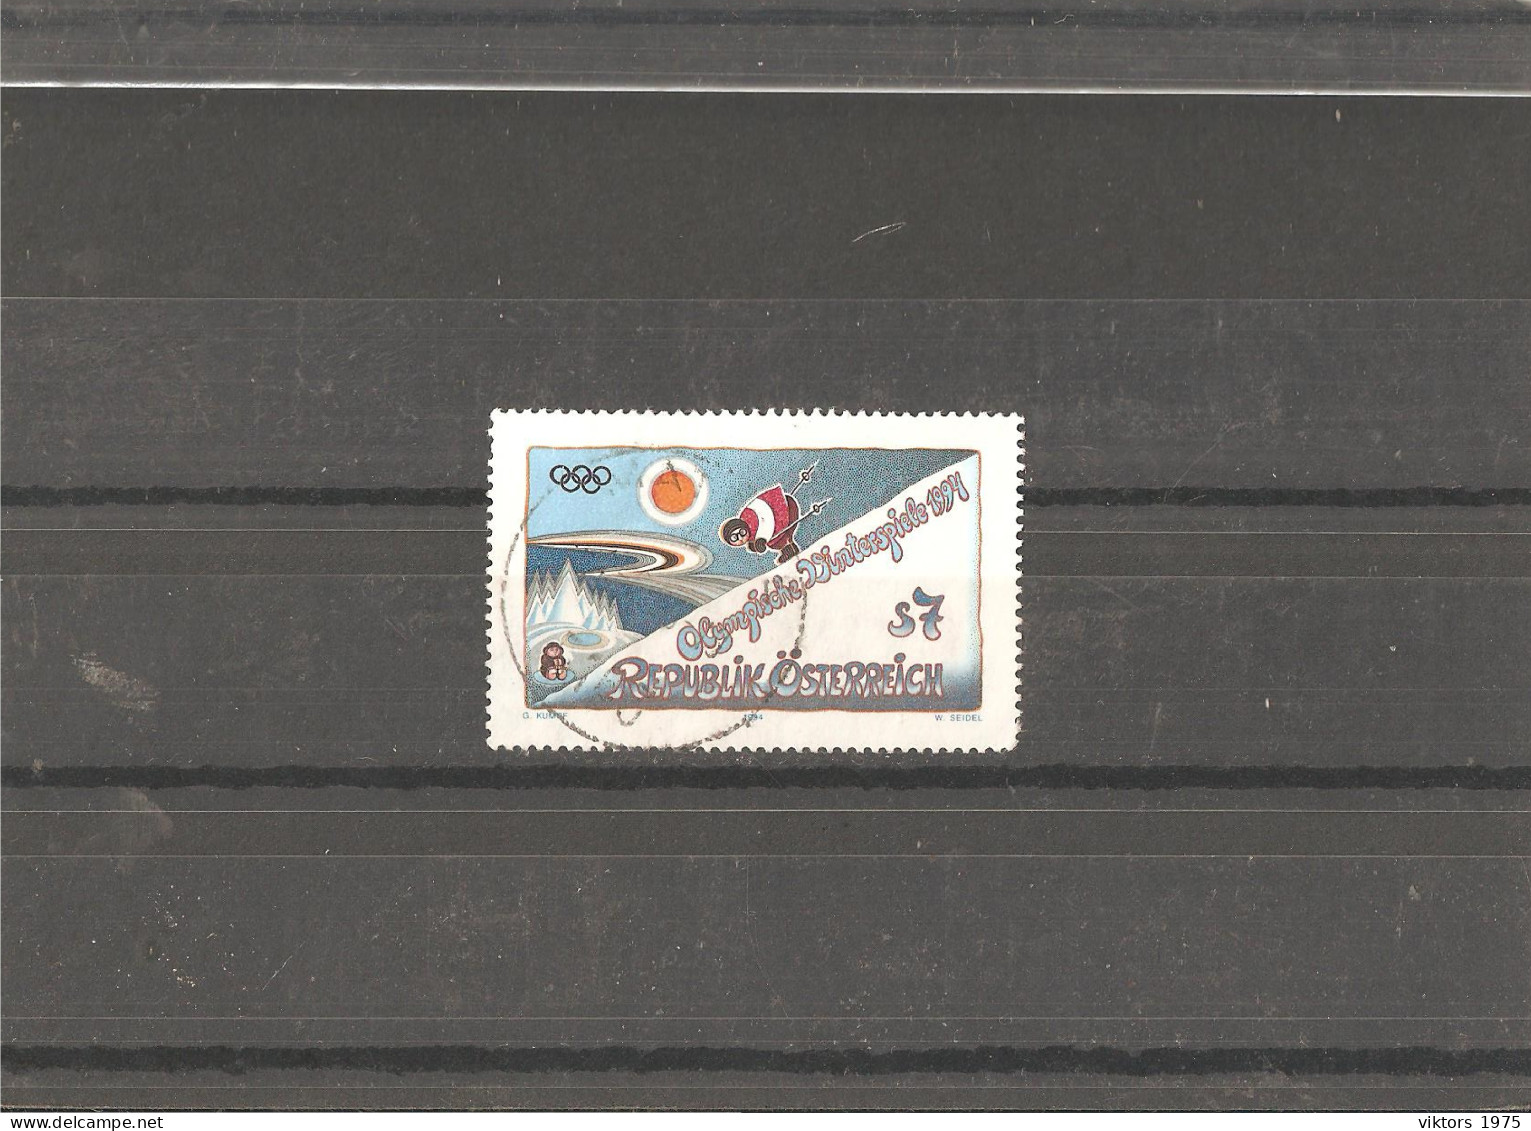 Used Stamp Nr.2118 In MICHEL Catalog - Usati